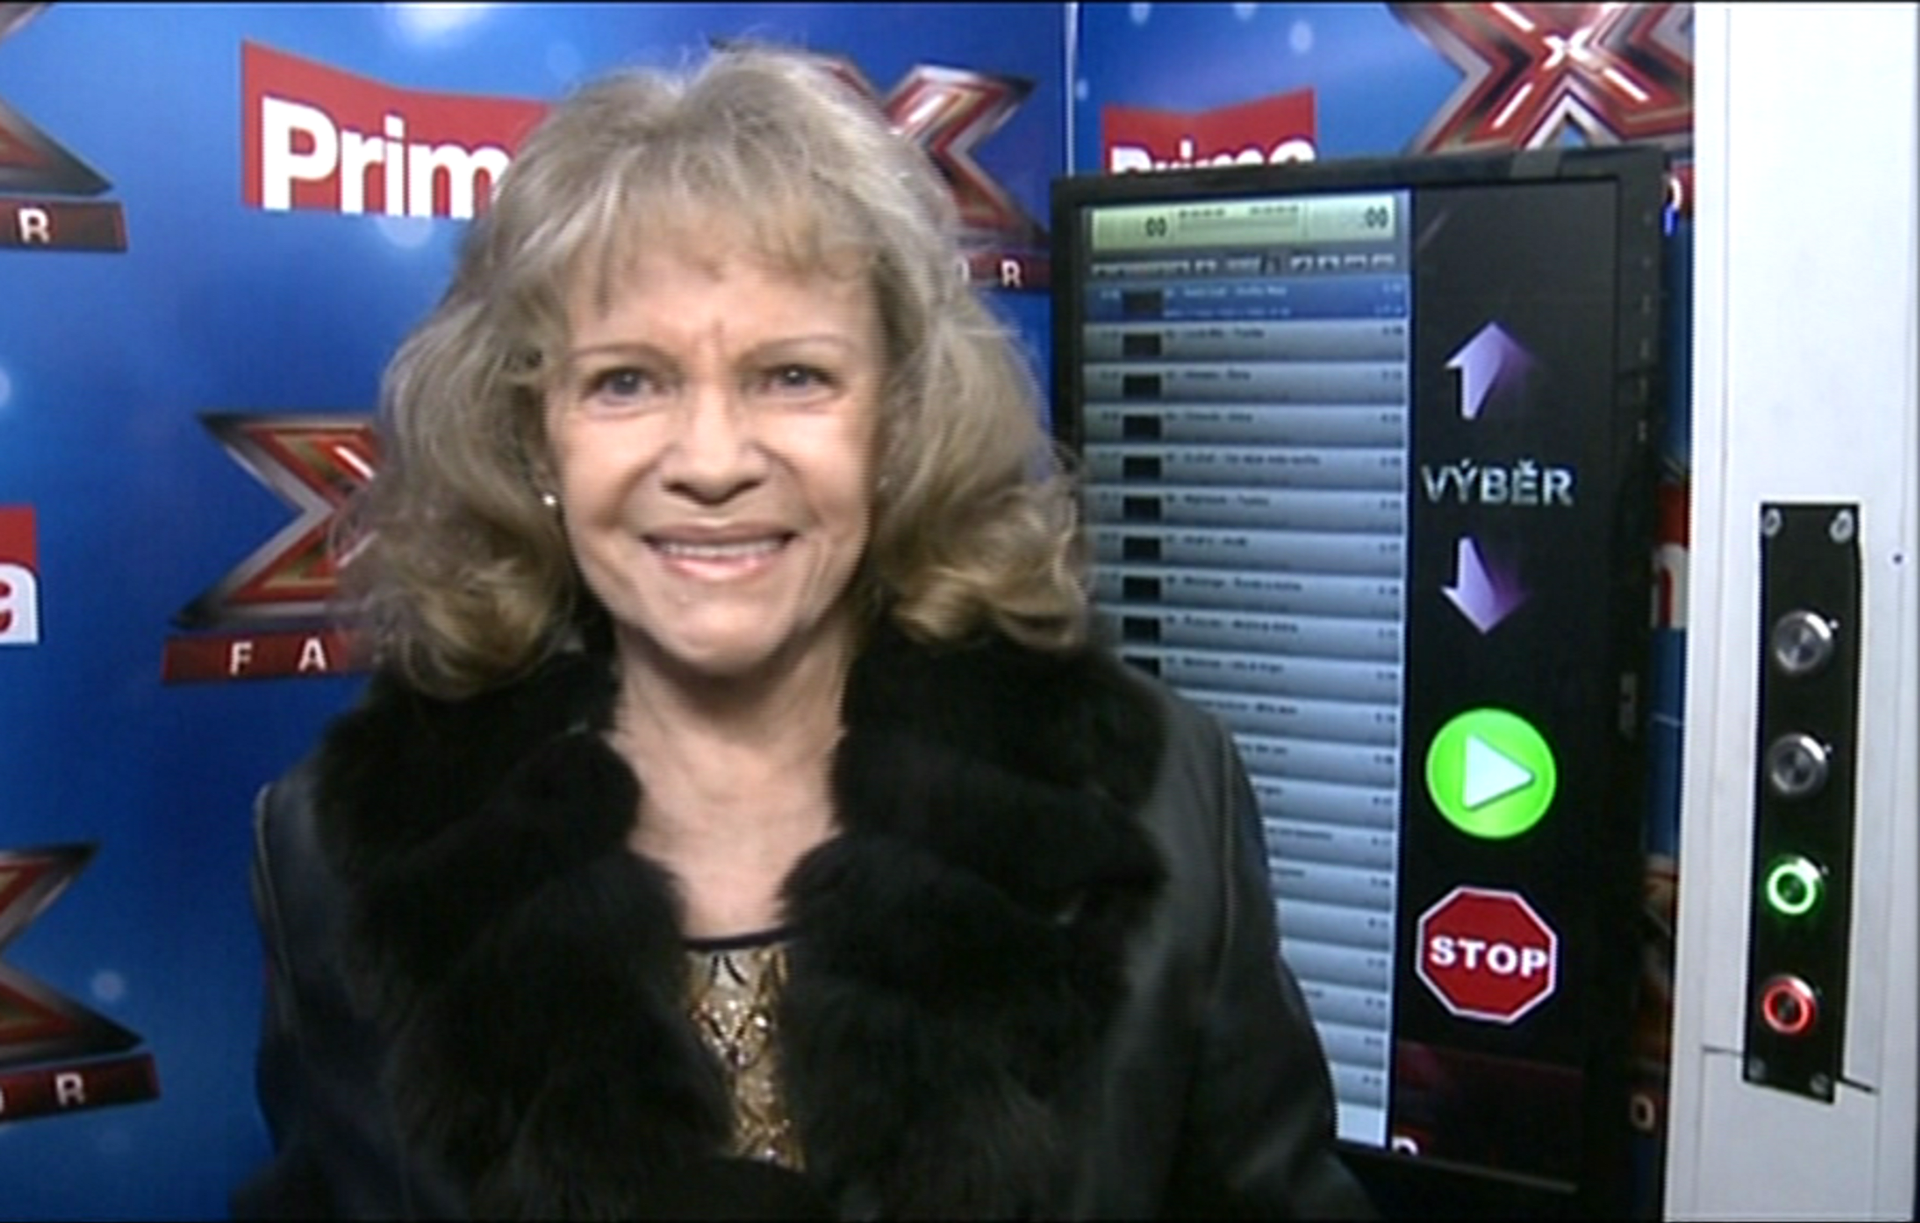 Video VIP zprávy: Co zpívala v budce X Factoru Eva Pilarová? To svoje šubyduby... podívejte se!